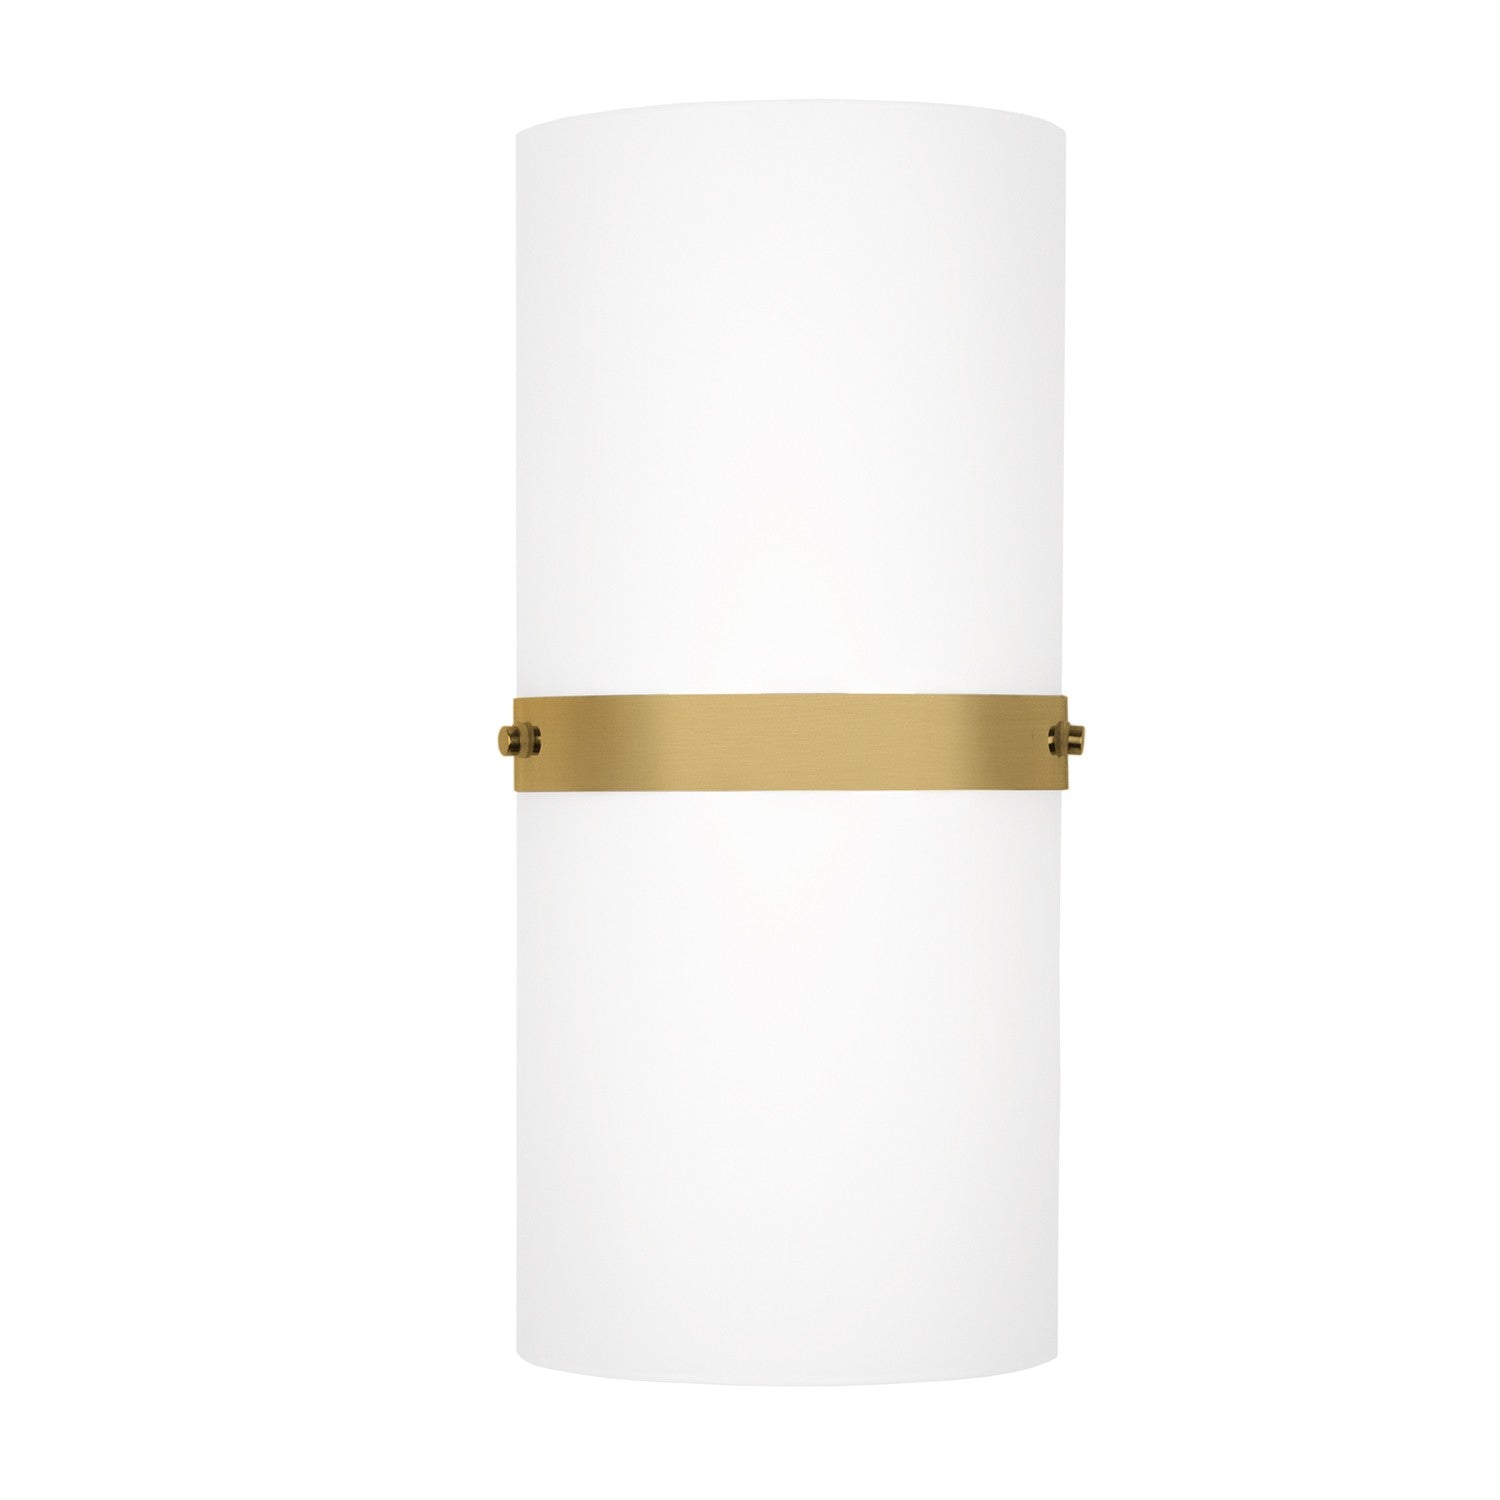 Kuzco Lighting - WS3413-BG - LED Wall Sconce - Harrow - Brushed Gold